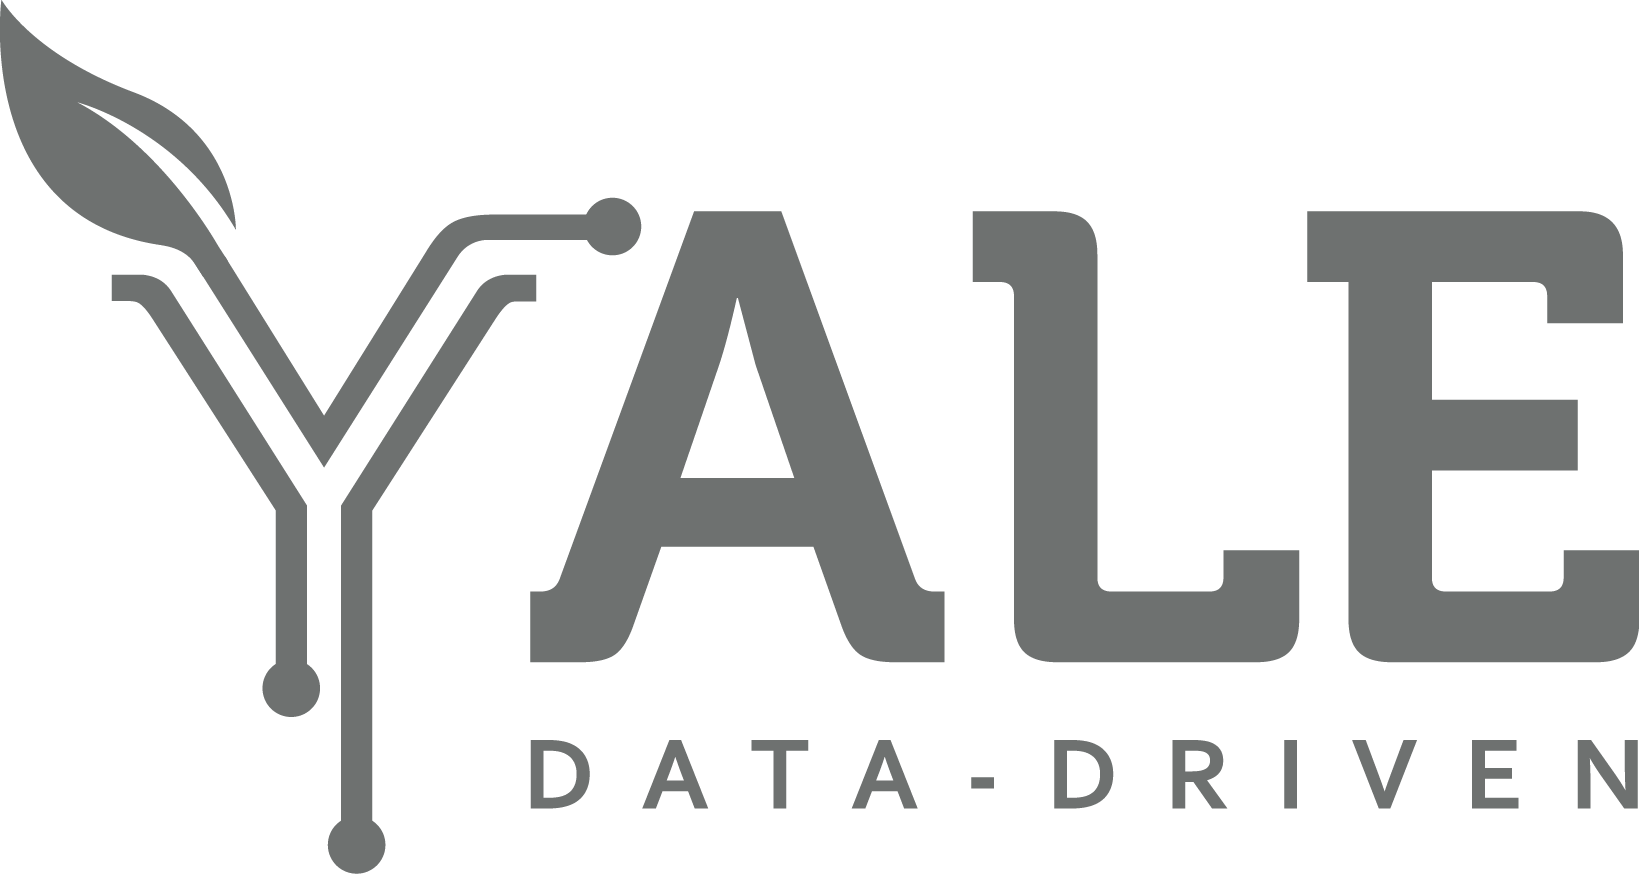 Data-Driven Yale